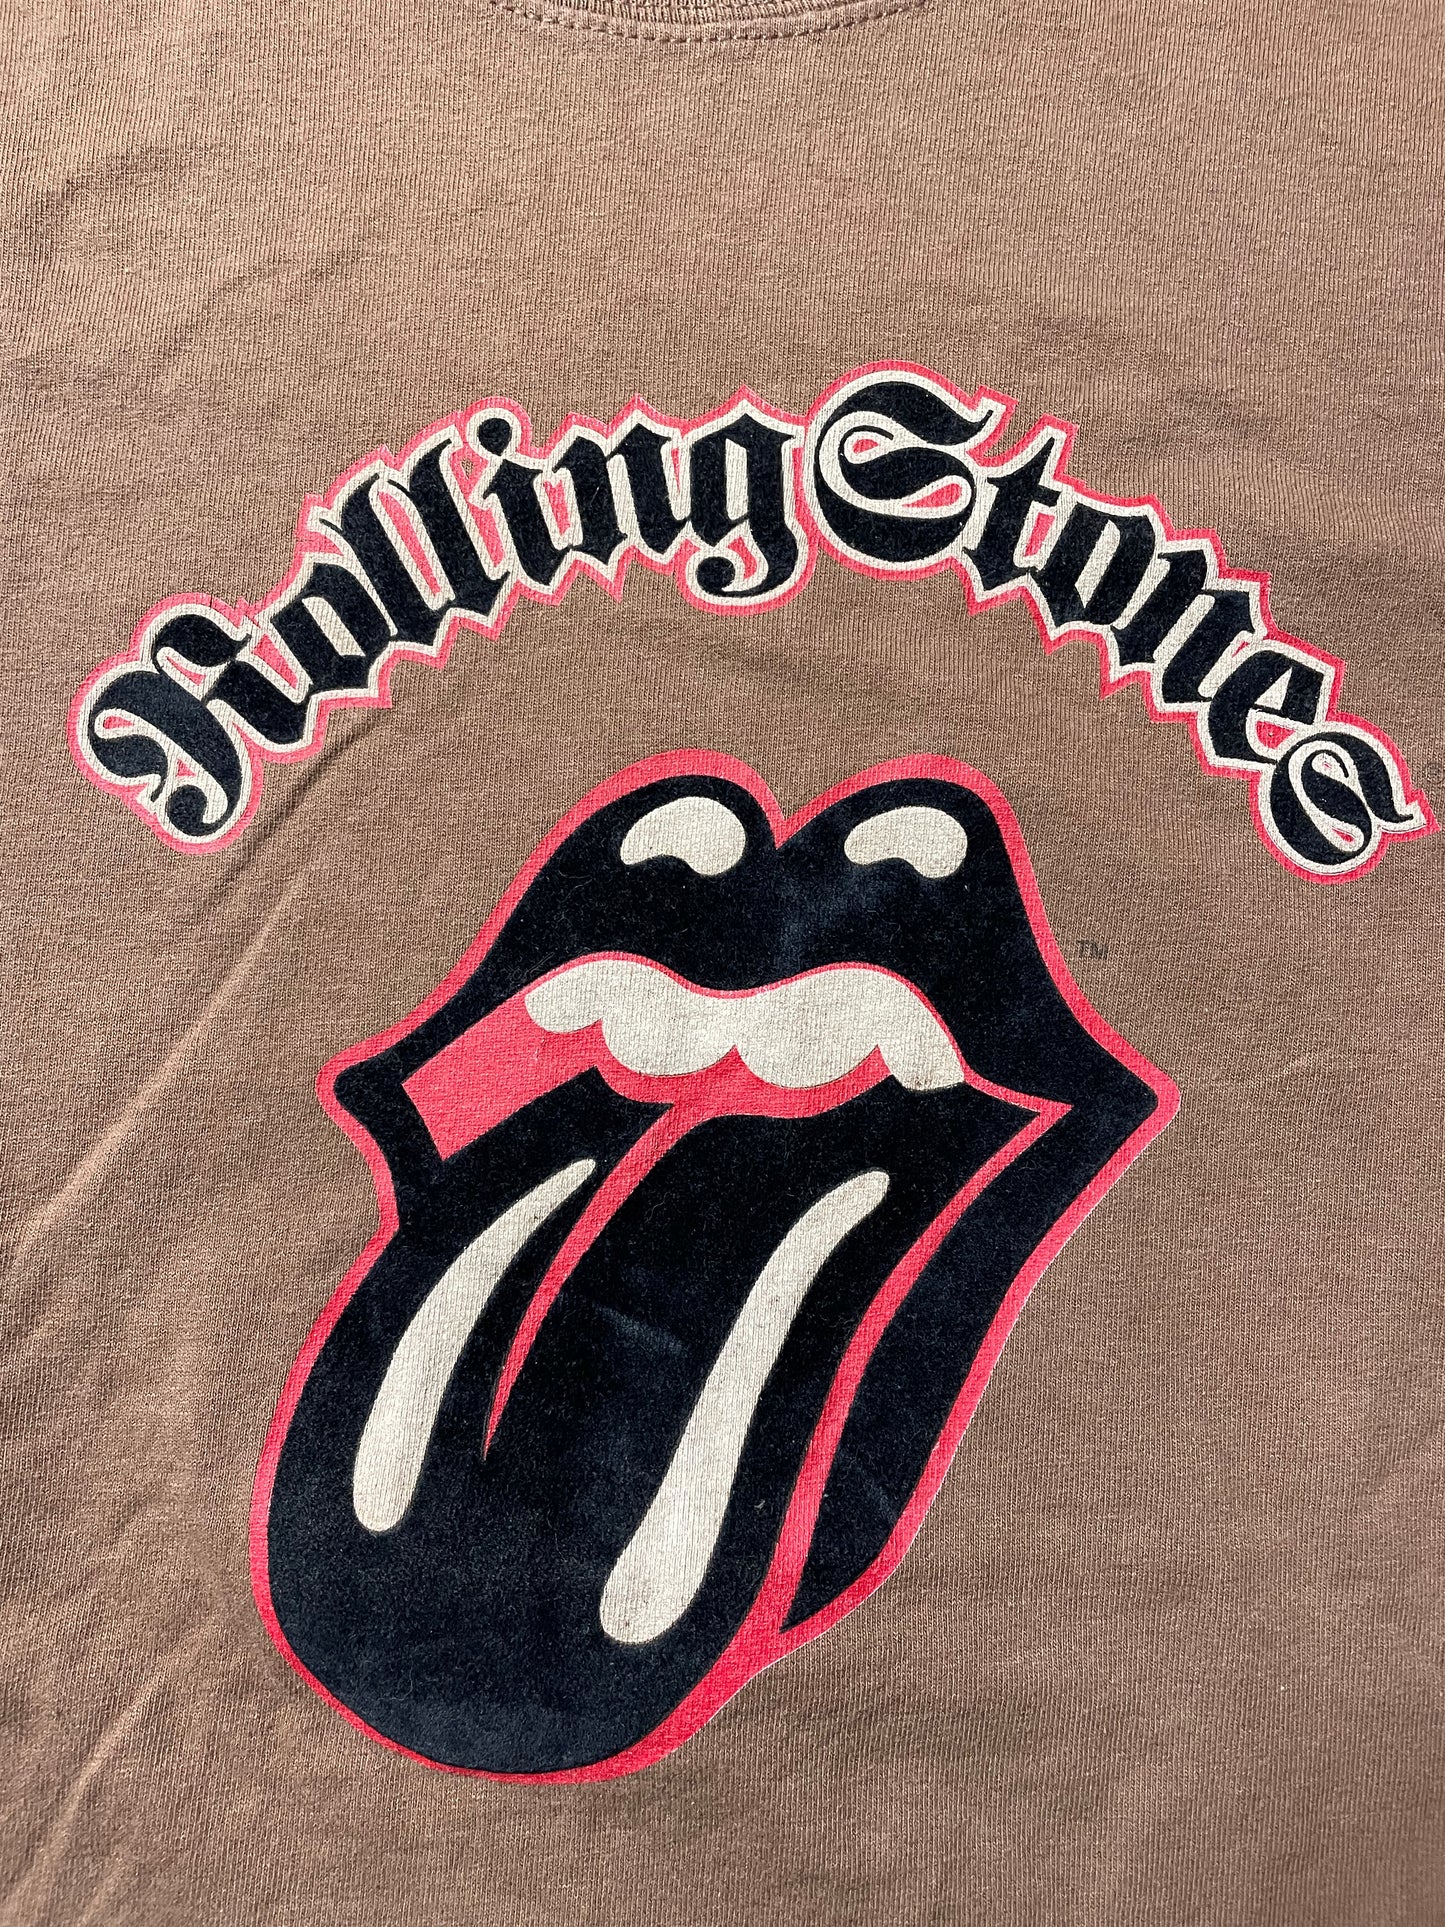 2005 Rolling Stones Tee